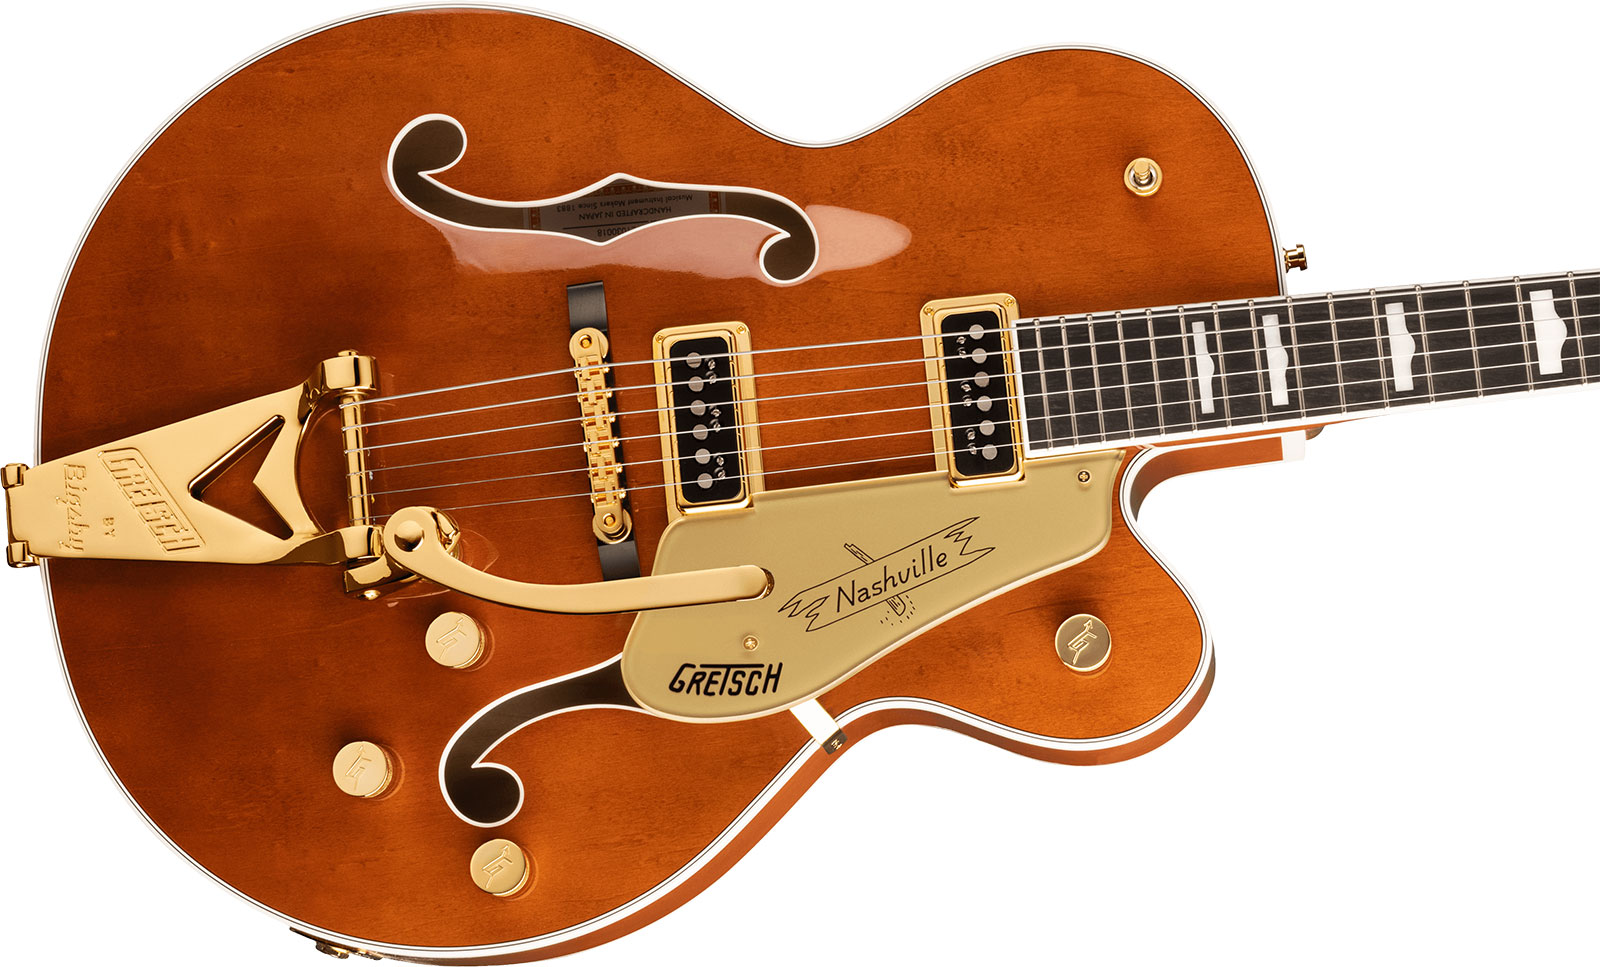 Gretsch G6120tg-ds Players Edition Nashville Pro Jap Bigsby Eb - Roundup Orange - Semi hollow elektriche gitaar - Variation 2